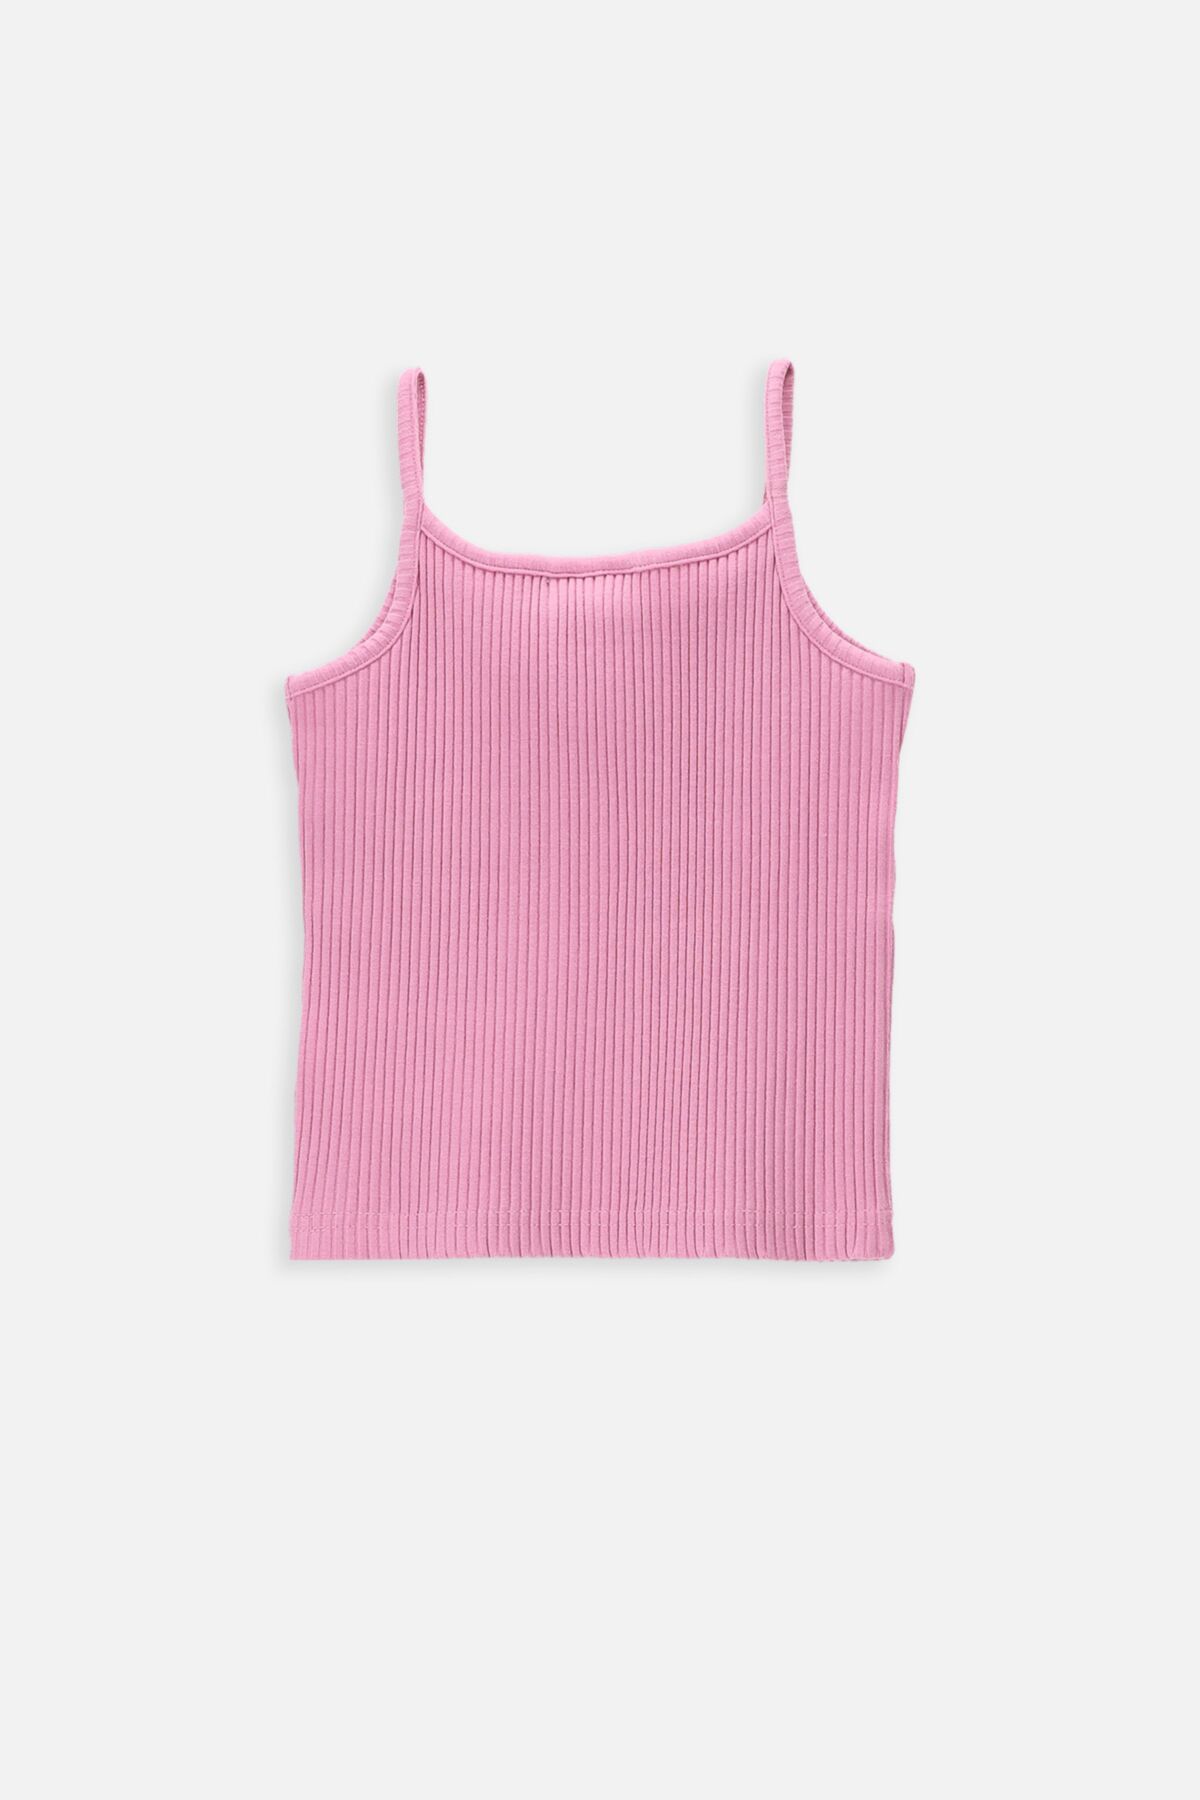 T-shirt bez rękawów różowy prążkowany z aplikacją serduszka 2236265